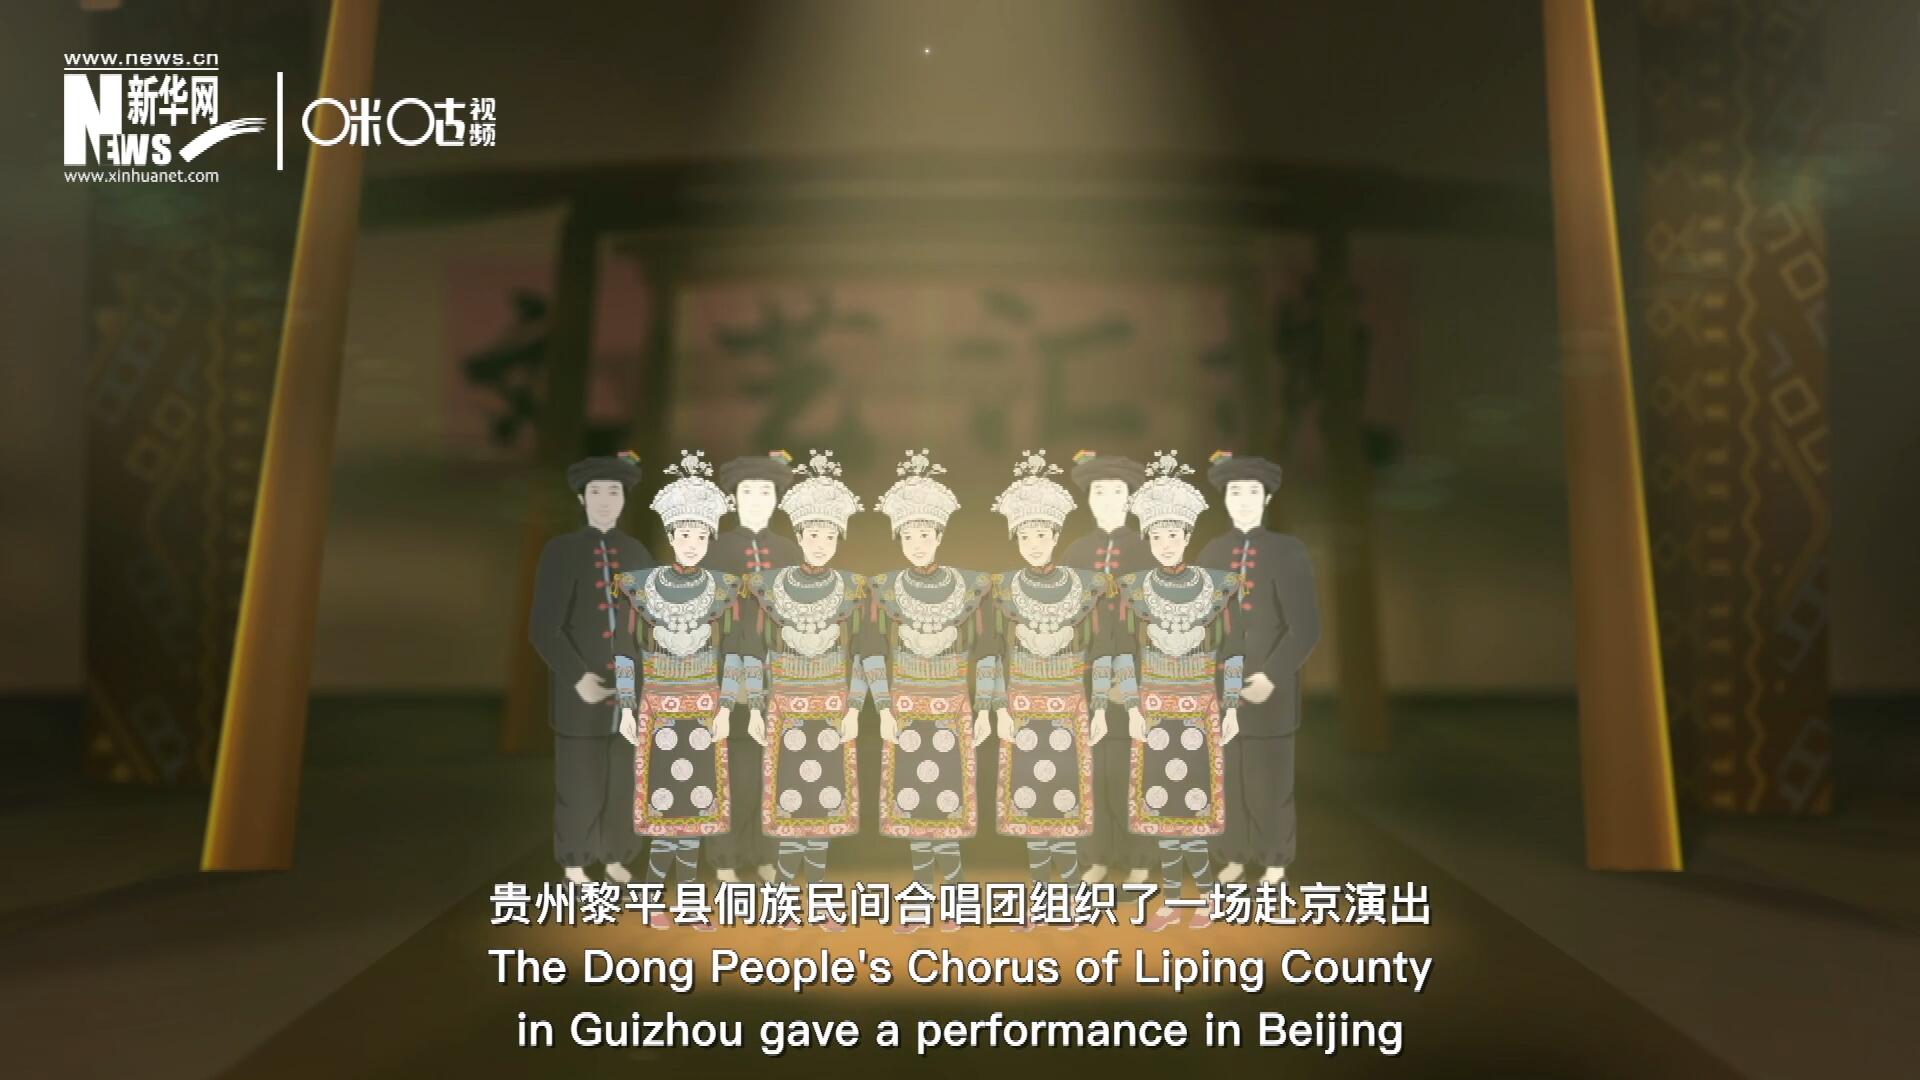 直到1959年10月，贵州黎平县侗族民间合唱团组织了一场赴京演出 ，侗族大歌才迈出了走出深山的第一步，在首都的舞台一炮而红。